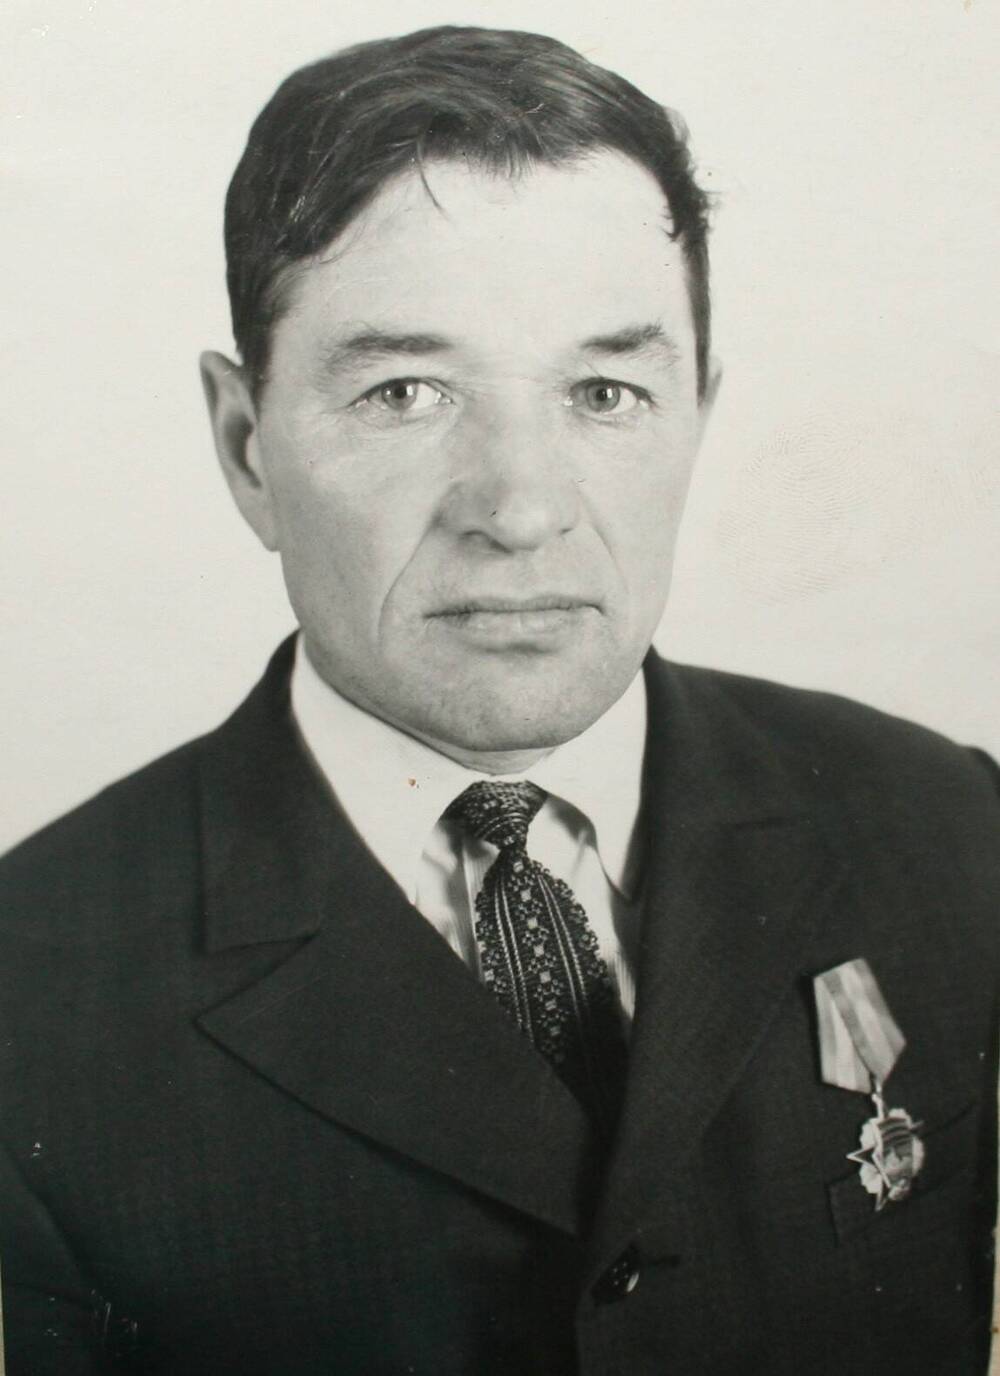 Фотография участника Великой Отечественной войны  Русакова Петра Дмитриевича